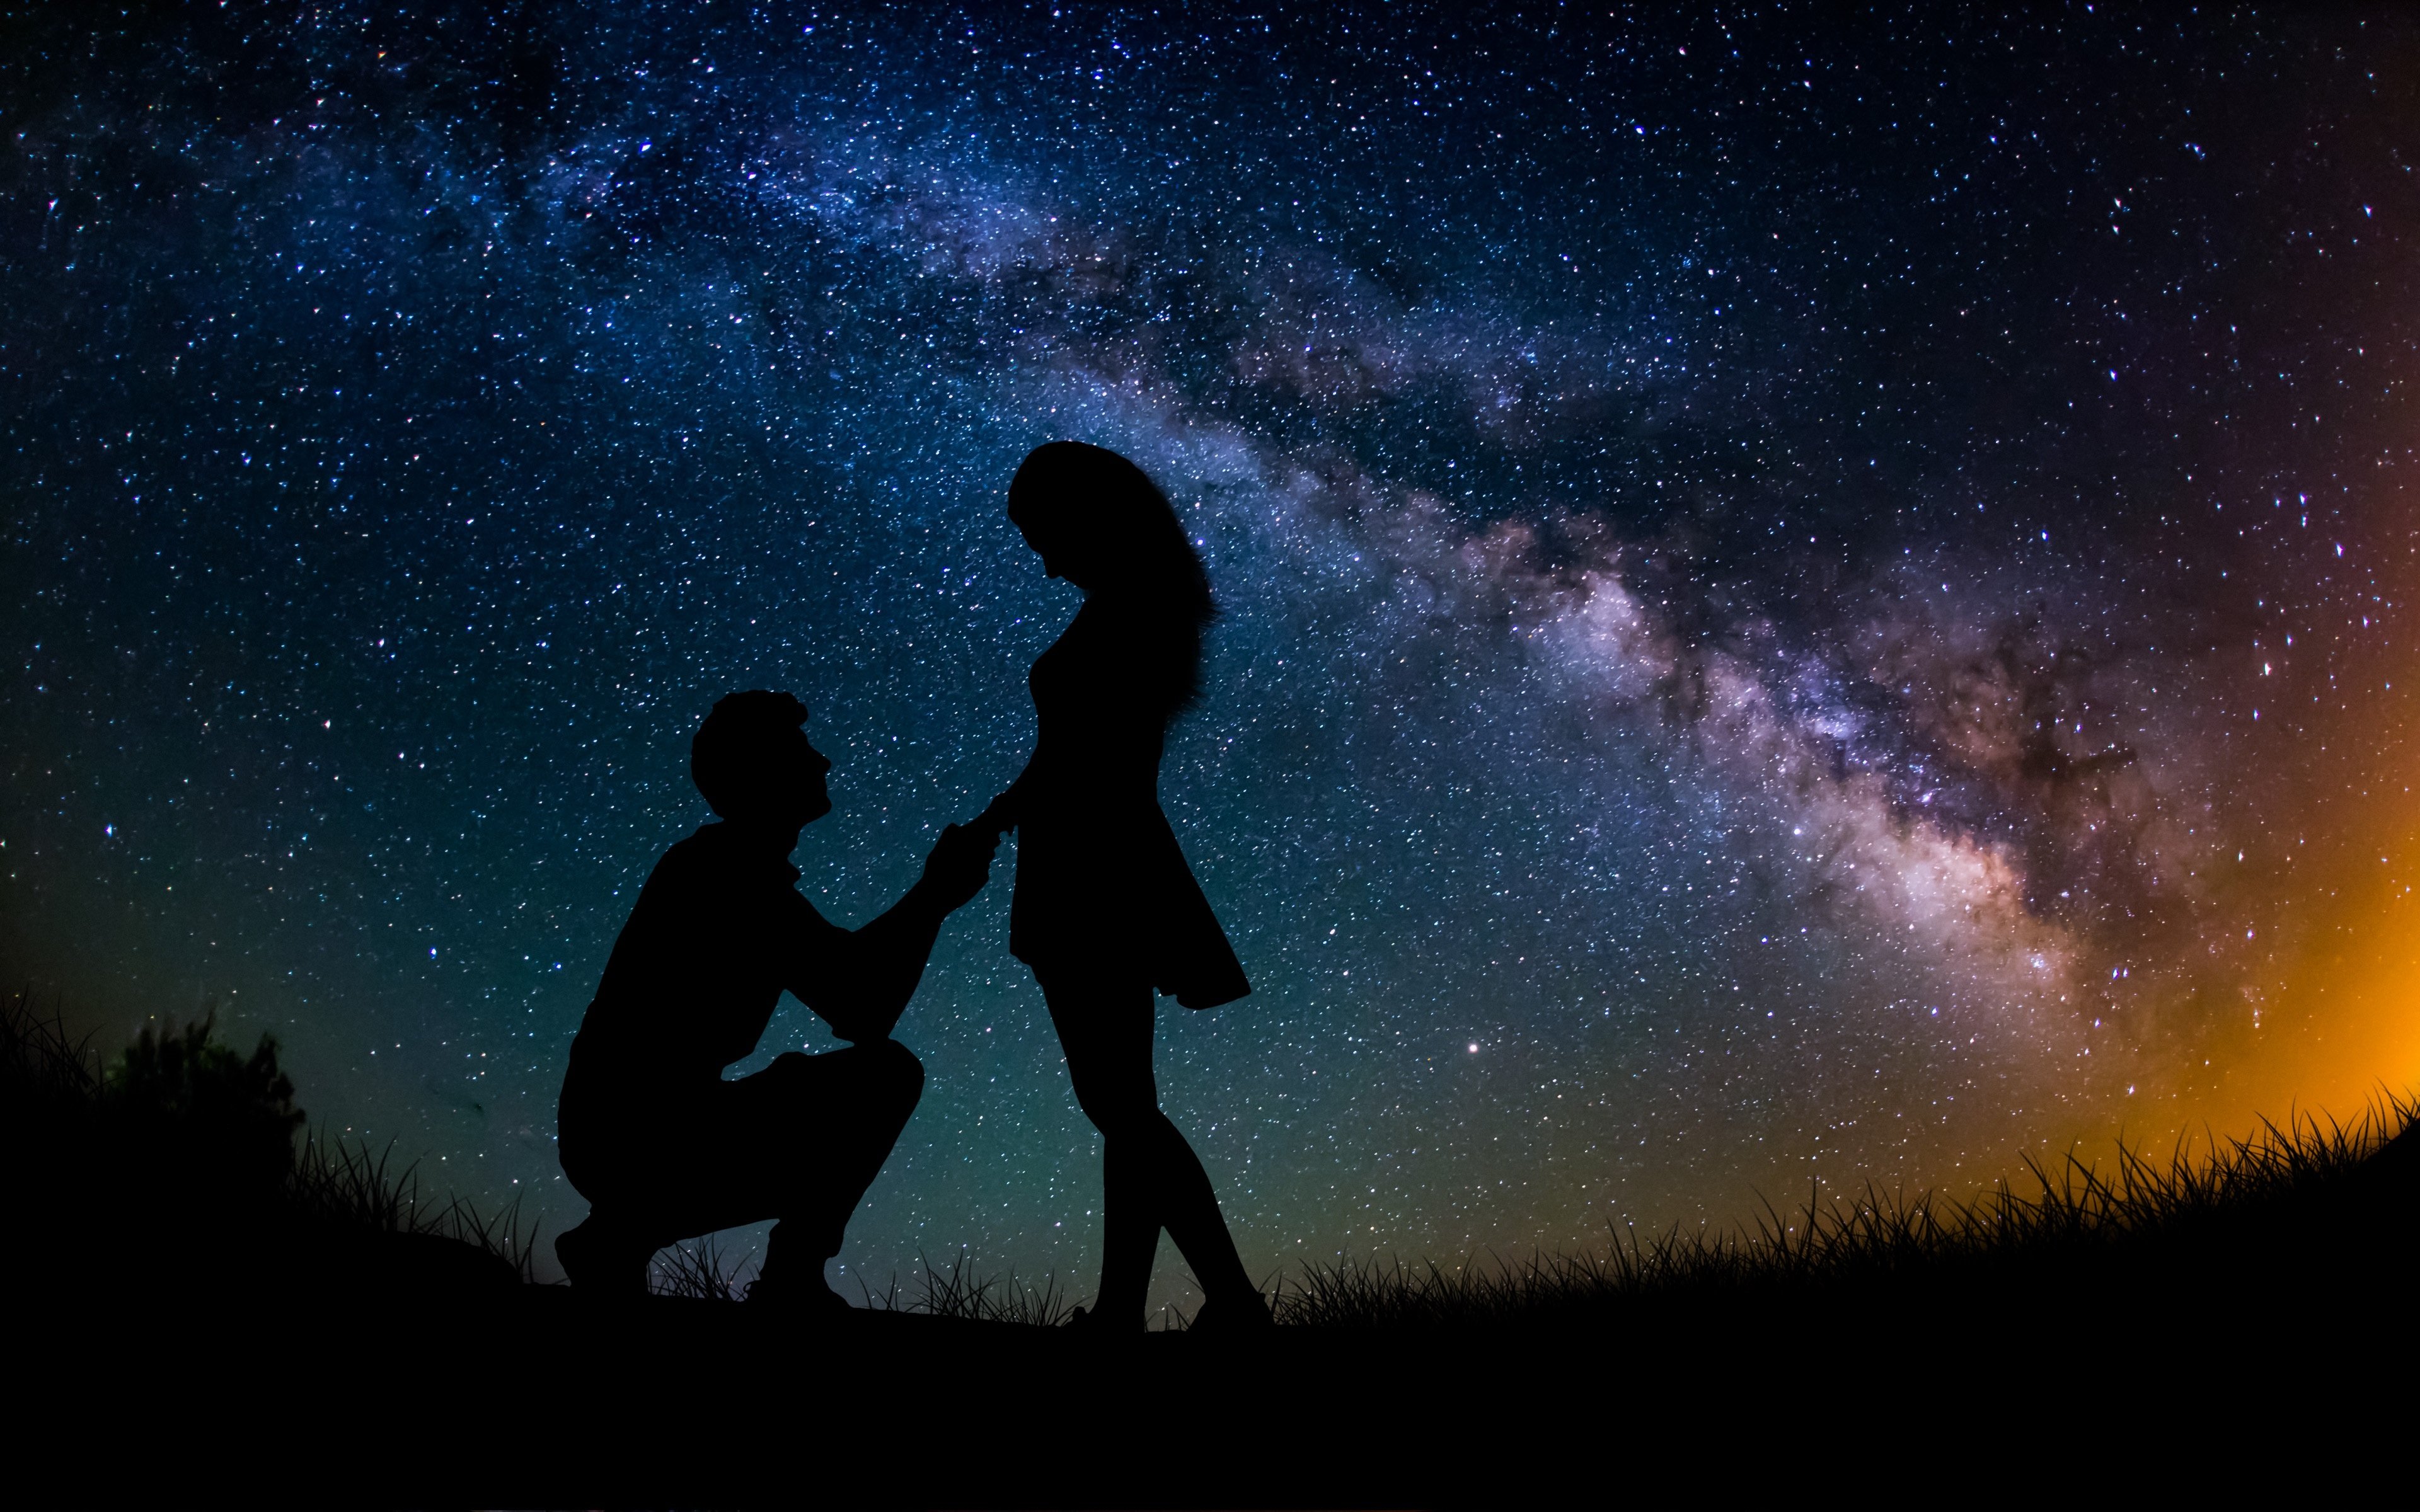 День и ночь встречаются. Пара на фоне звездного неба. Двое под звездами. Ночь любви. Пара на фоне ночного неба.